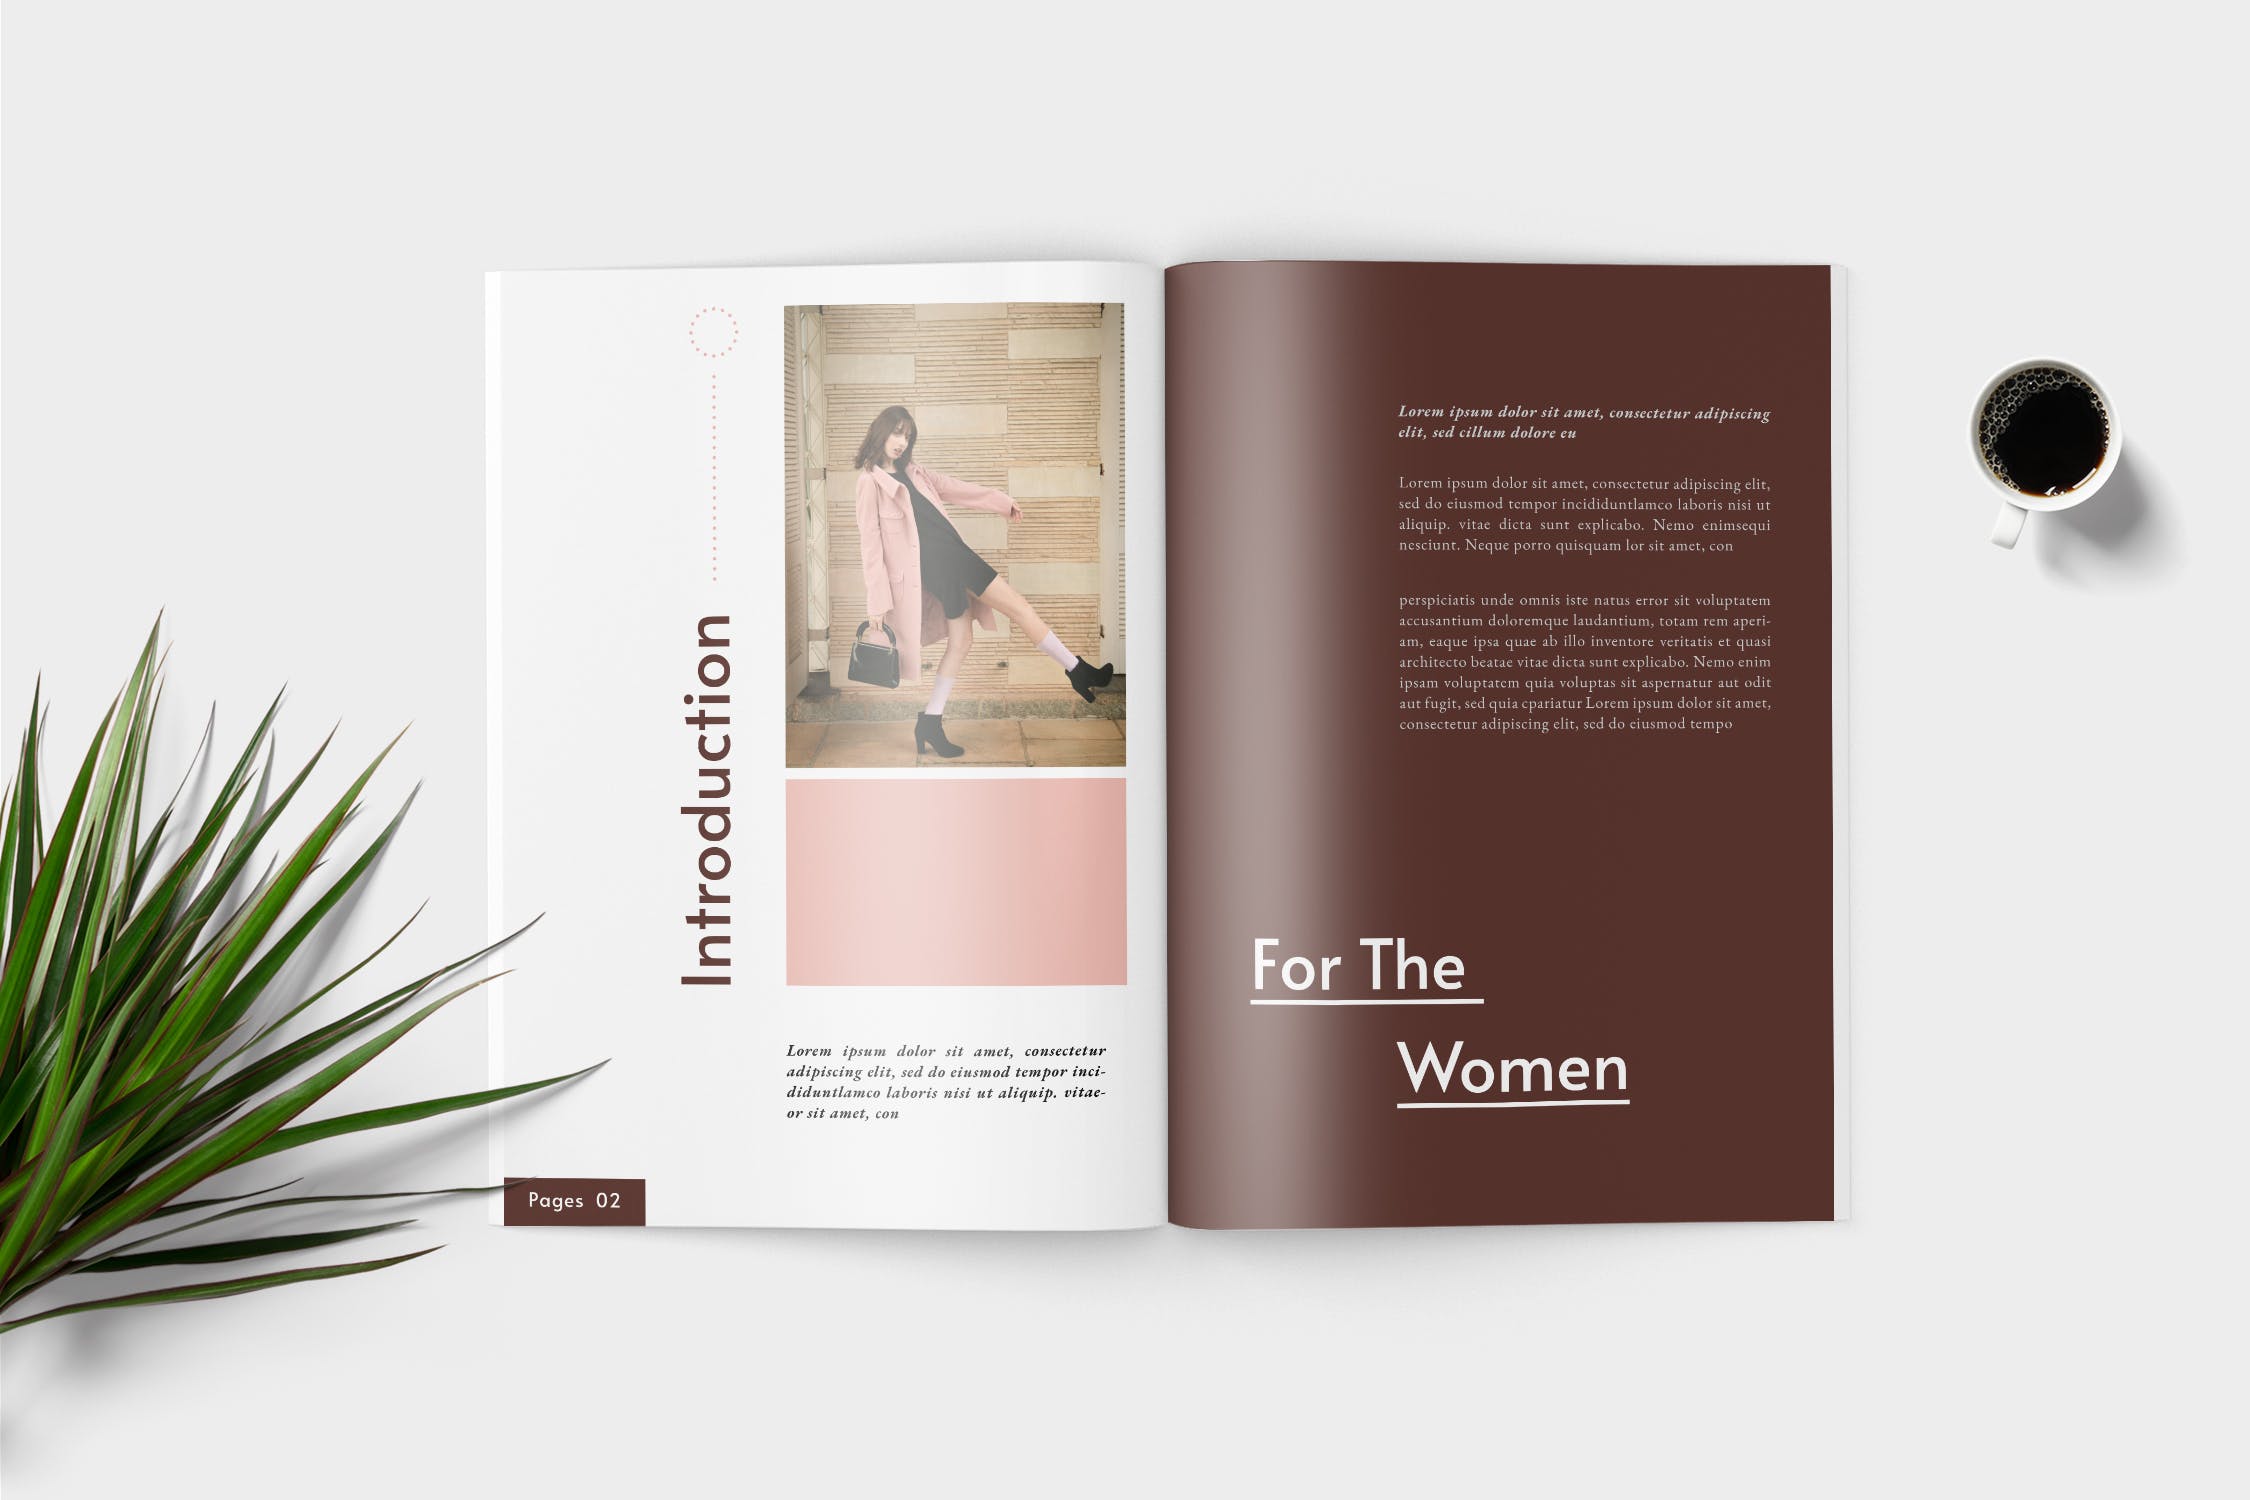 时装产品16图库精选目录设计模板 Elana Fashion Lookbook Catalogue插图(2)